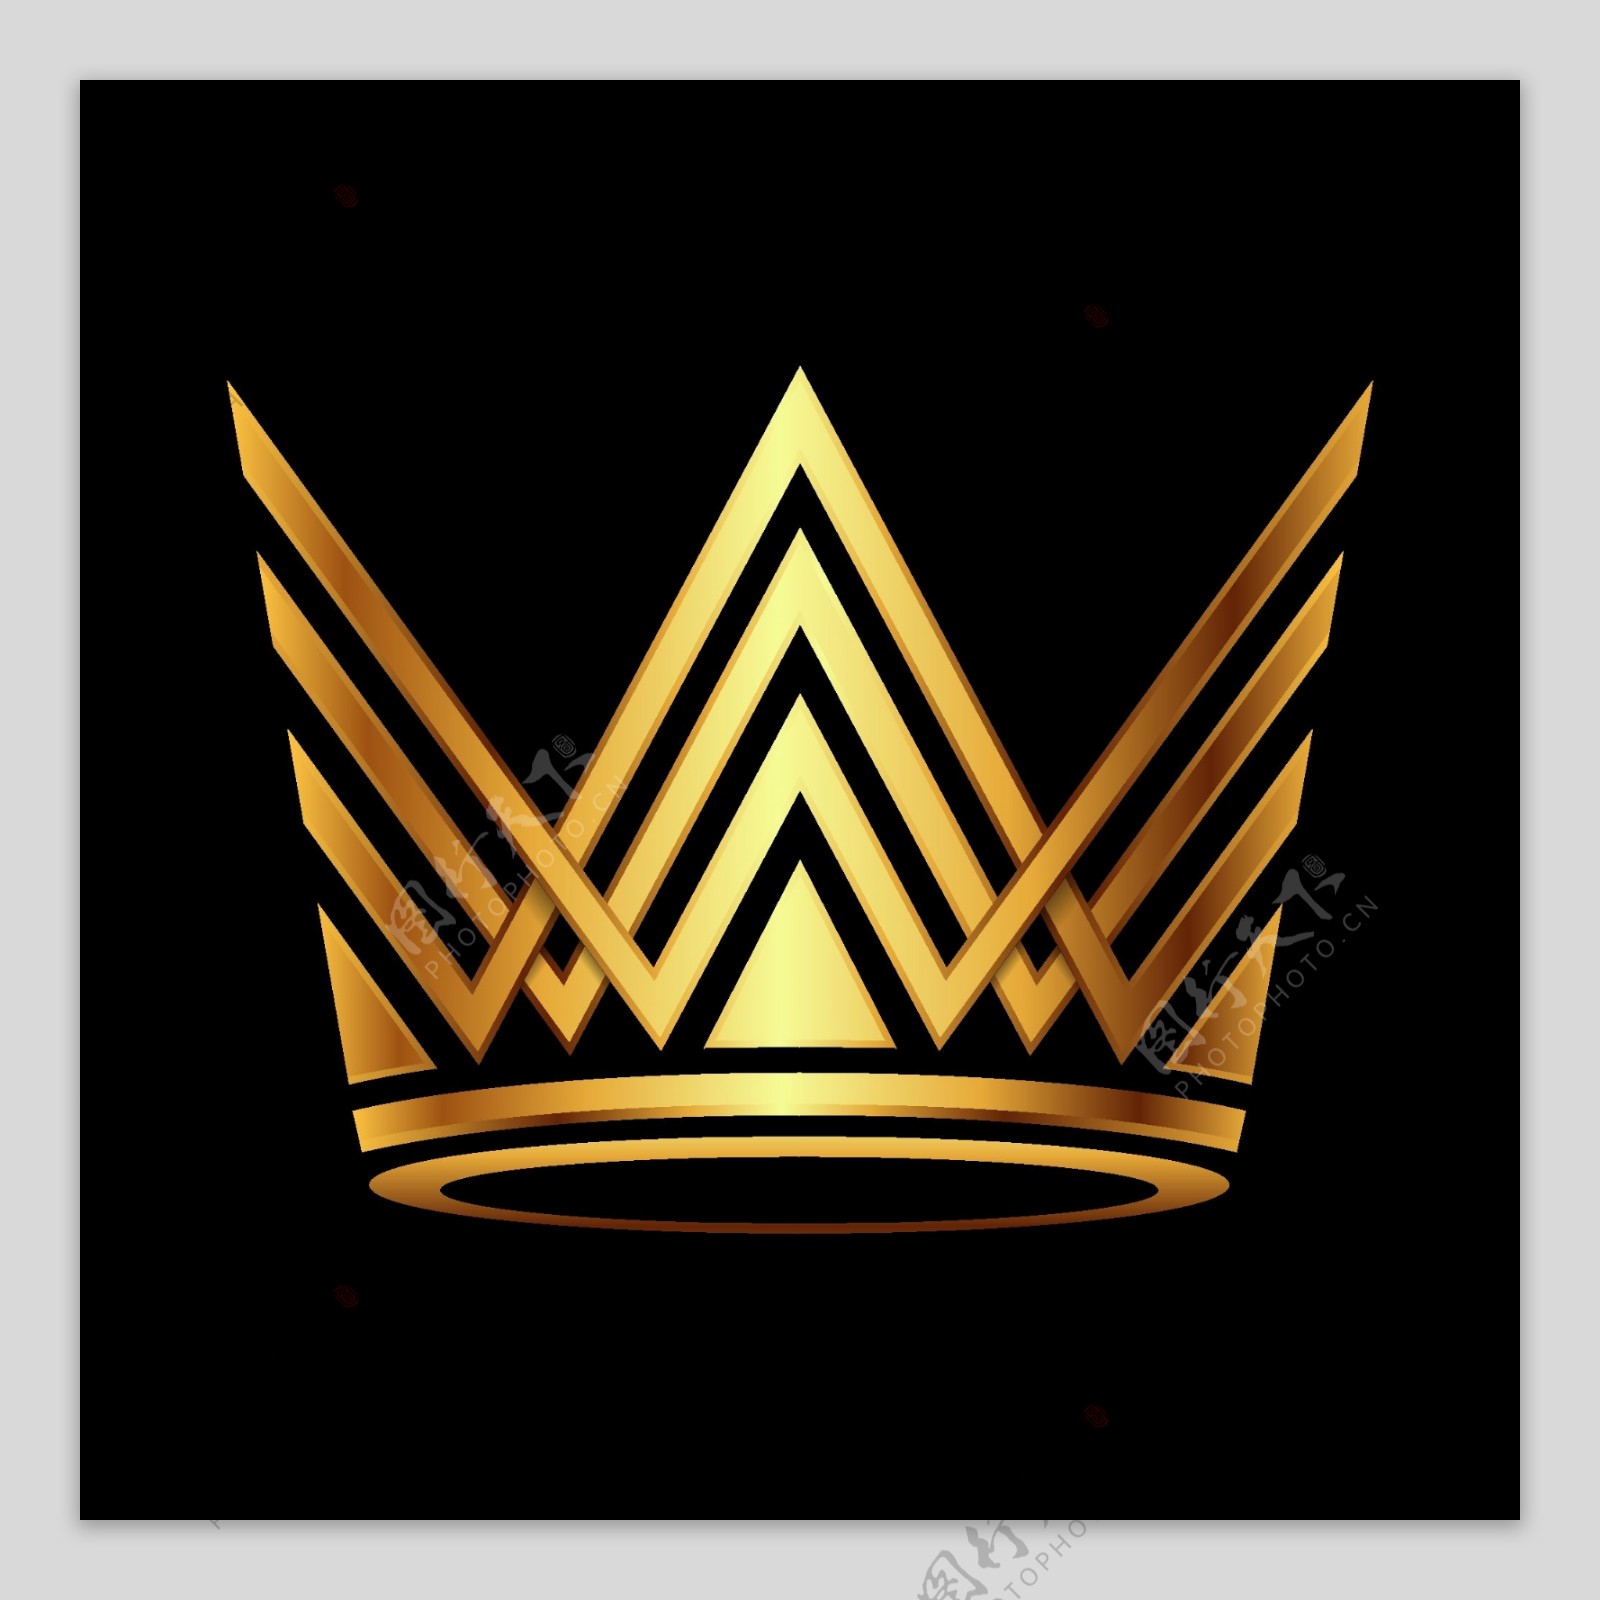 皇冠logo图片素材免费下载 - 觅知网